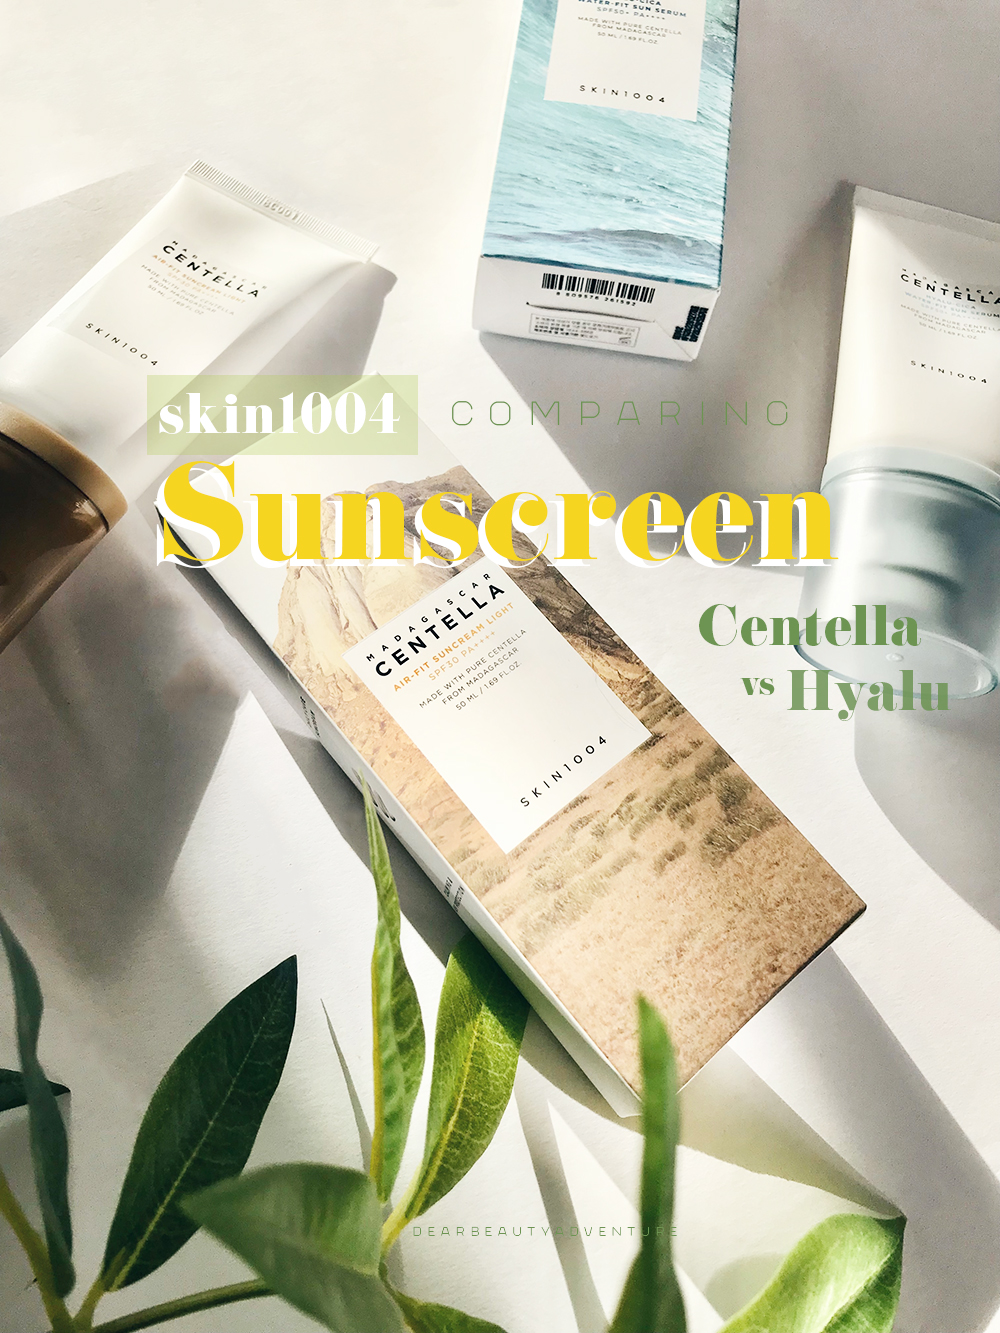 skin1004 sunscreen